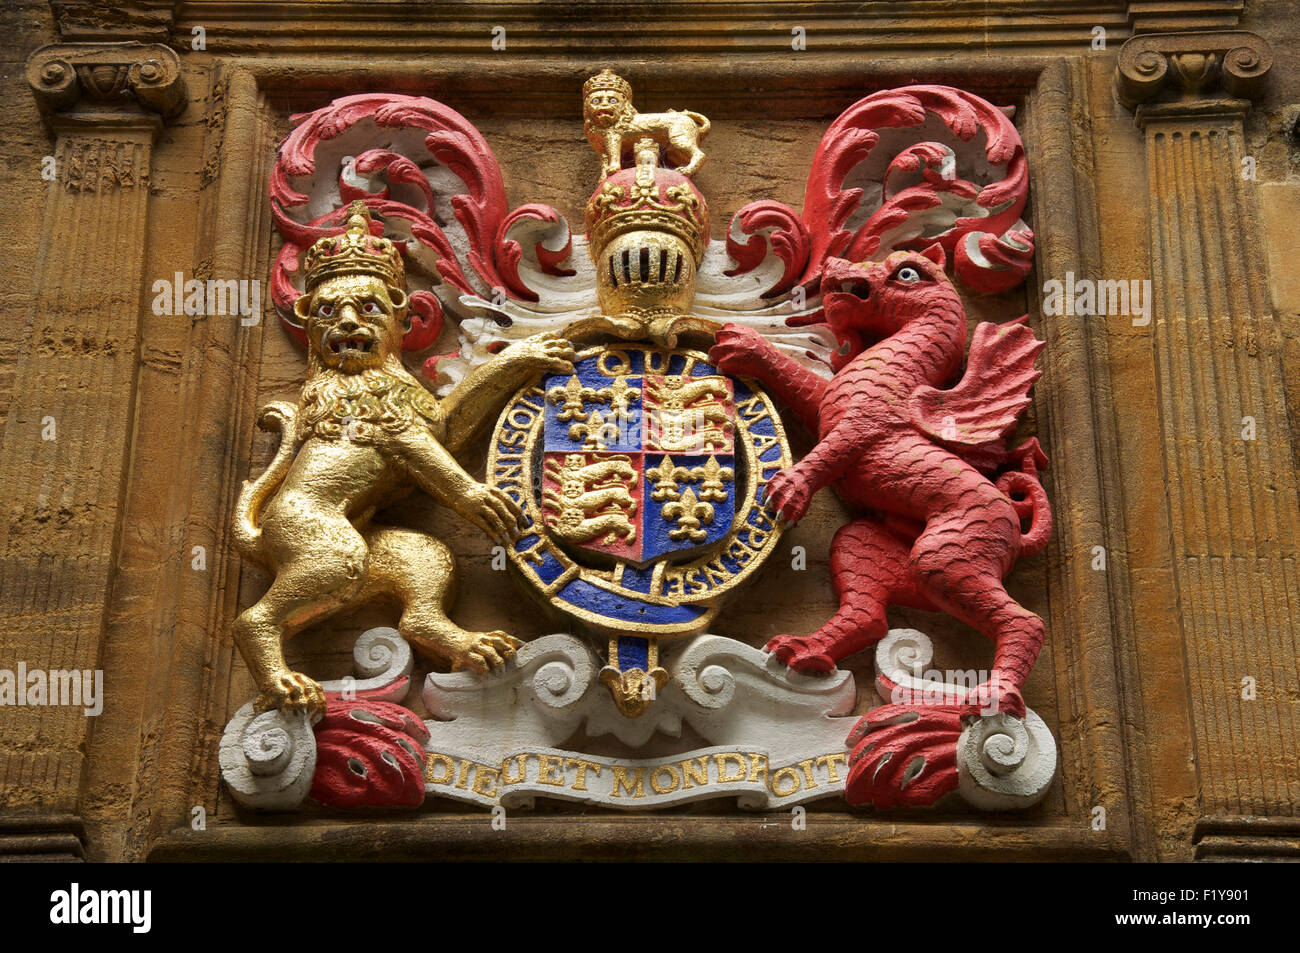 Les armoiries royales du roi Édouard 6e en raison de Sherborne School, qui a été fondée en son règne. Dorset, Angleterre, Royaume-Uni. Banque D'Images